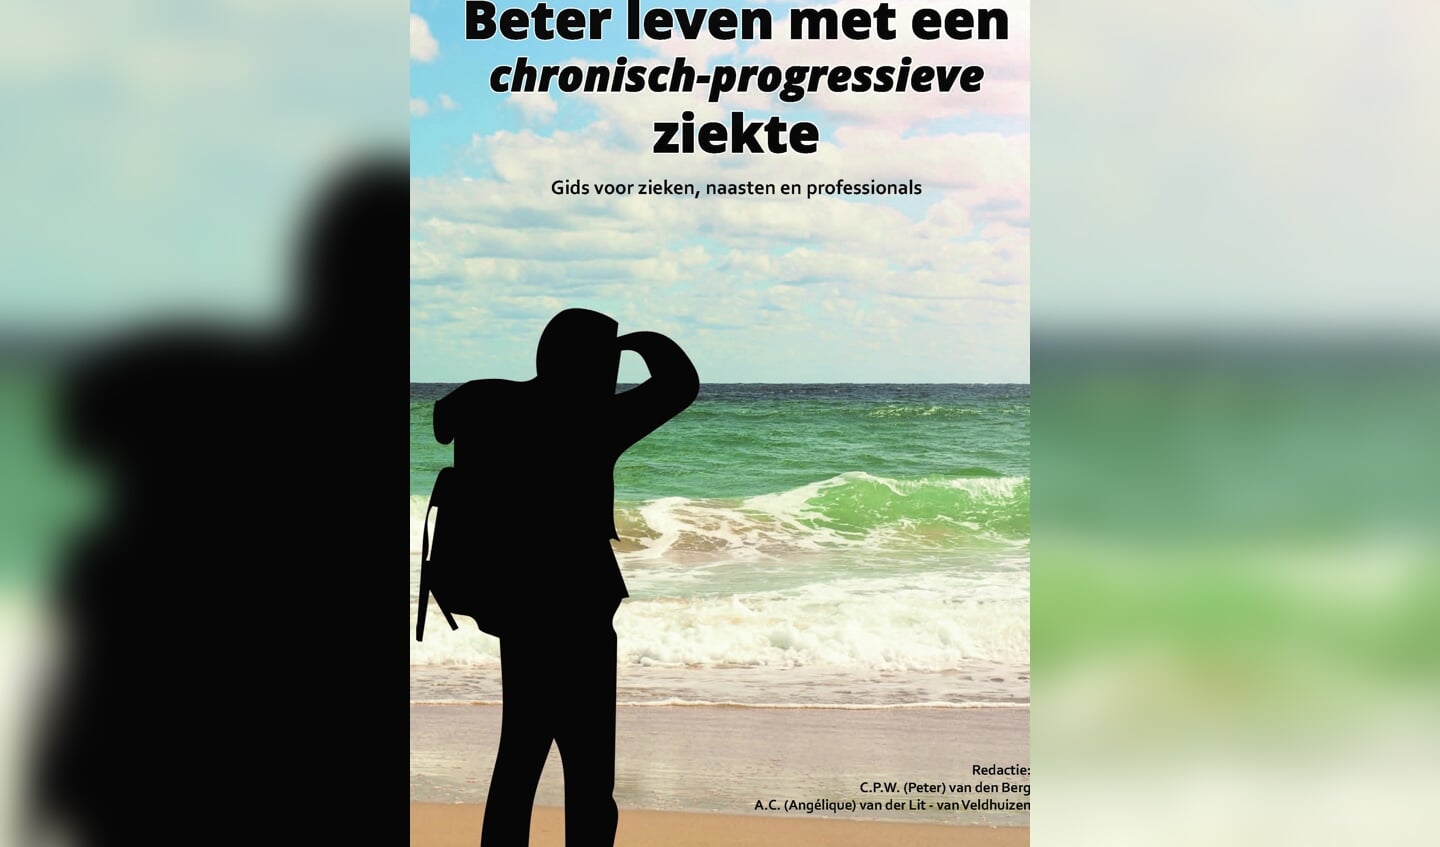 De cover is bedacht door de vrouw van Peter van den Berg.